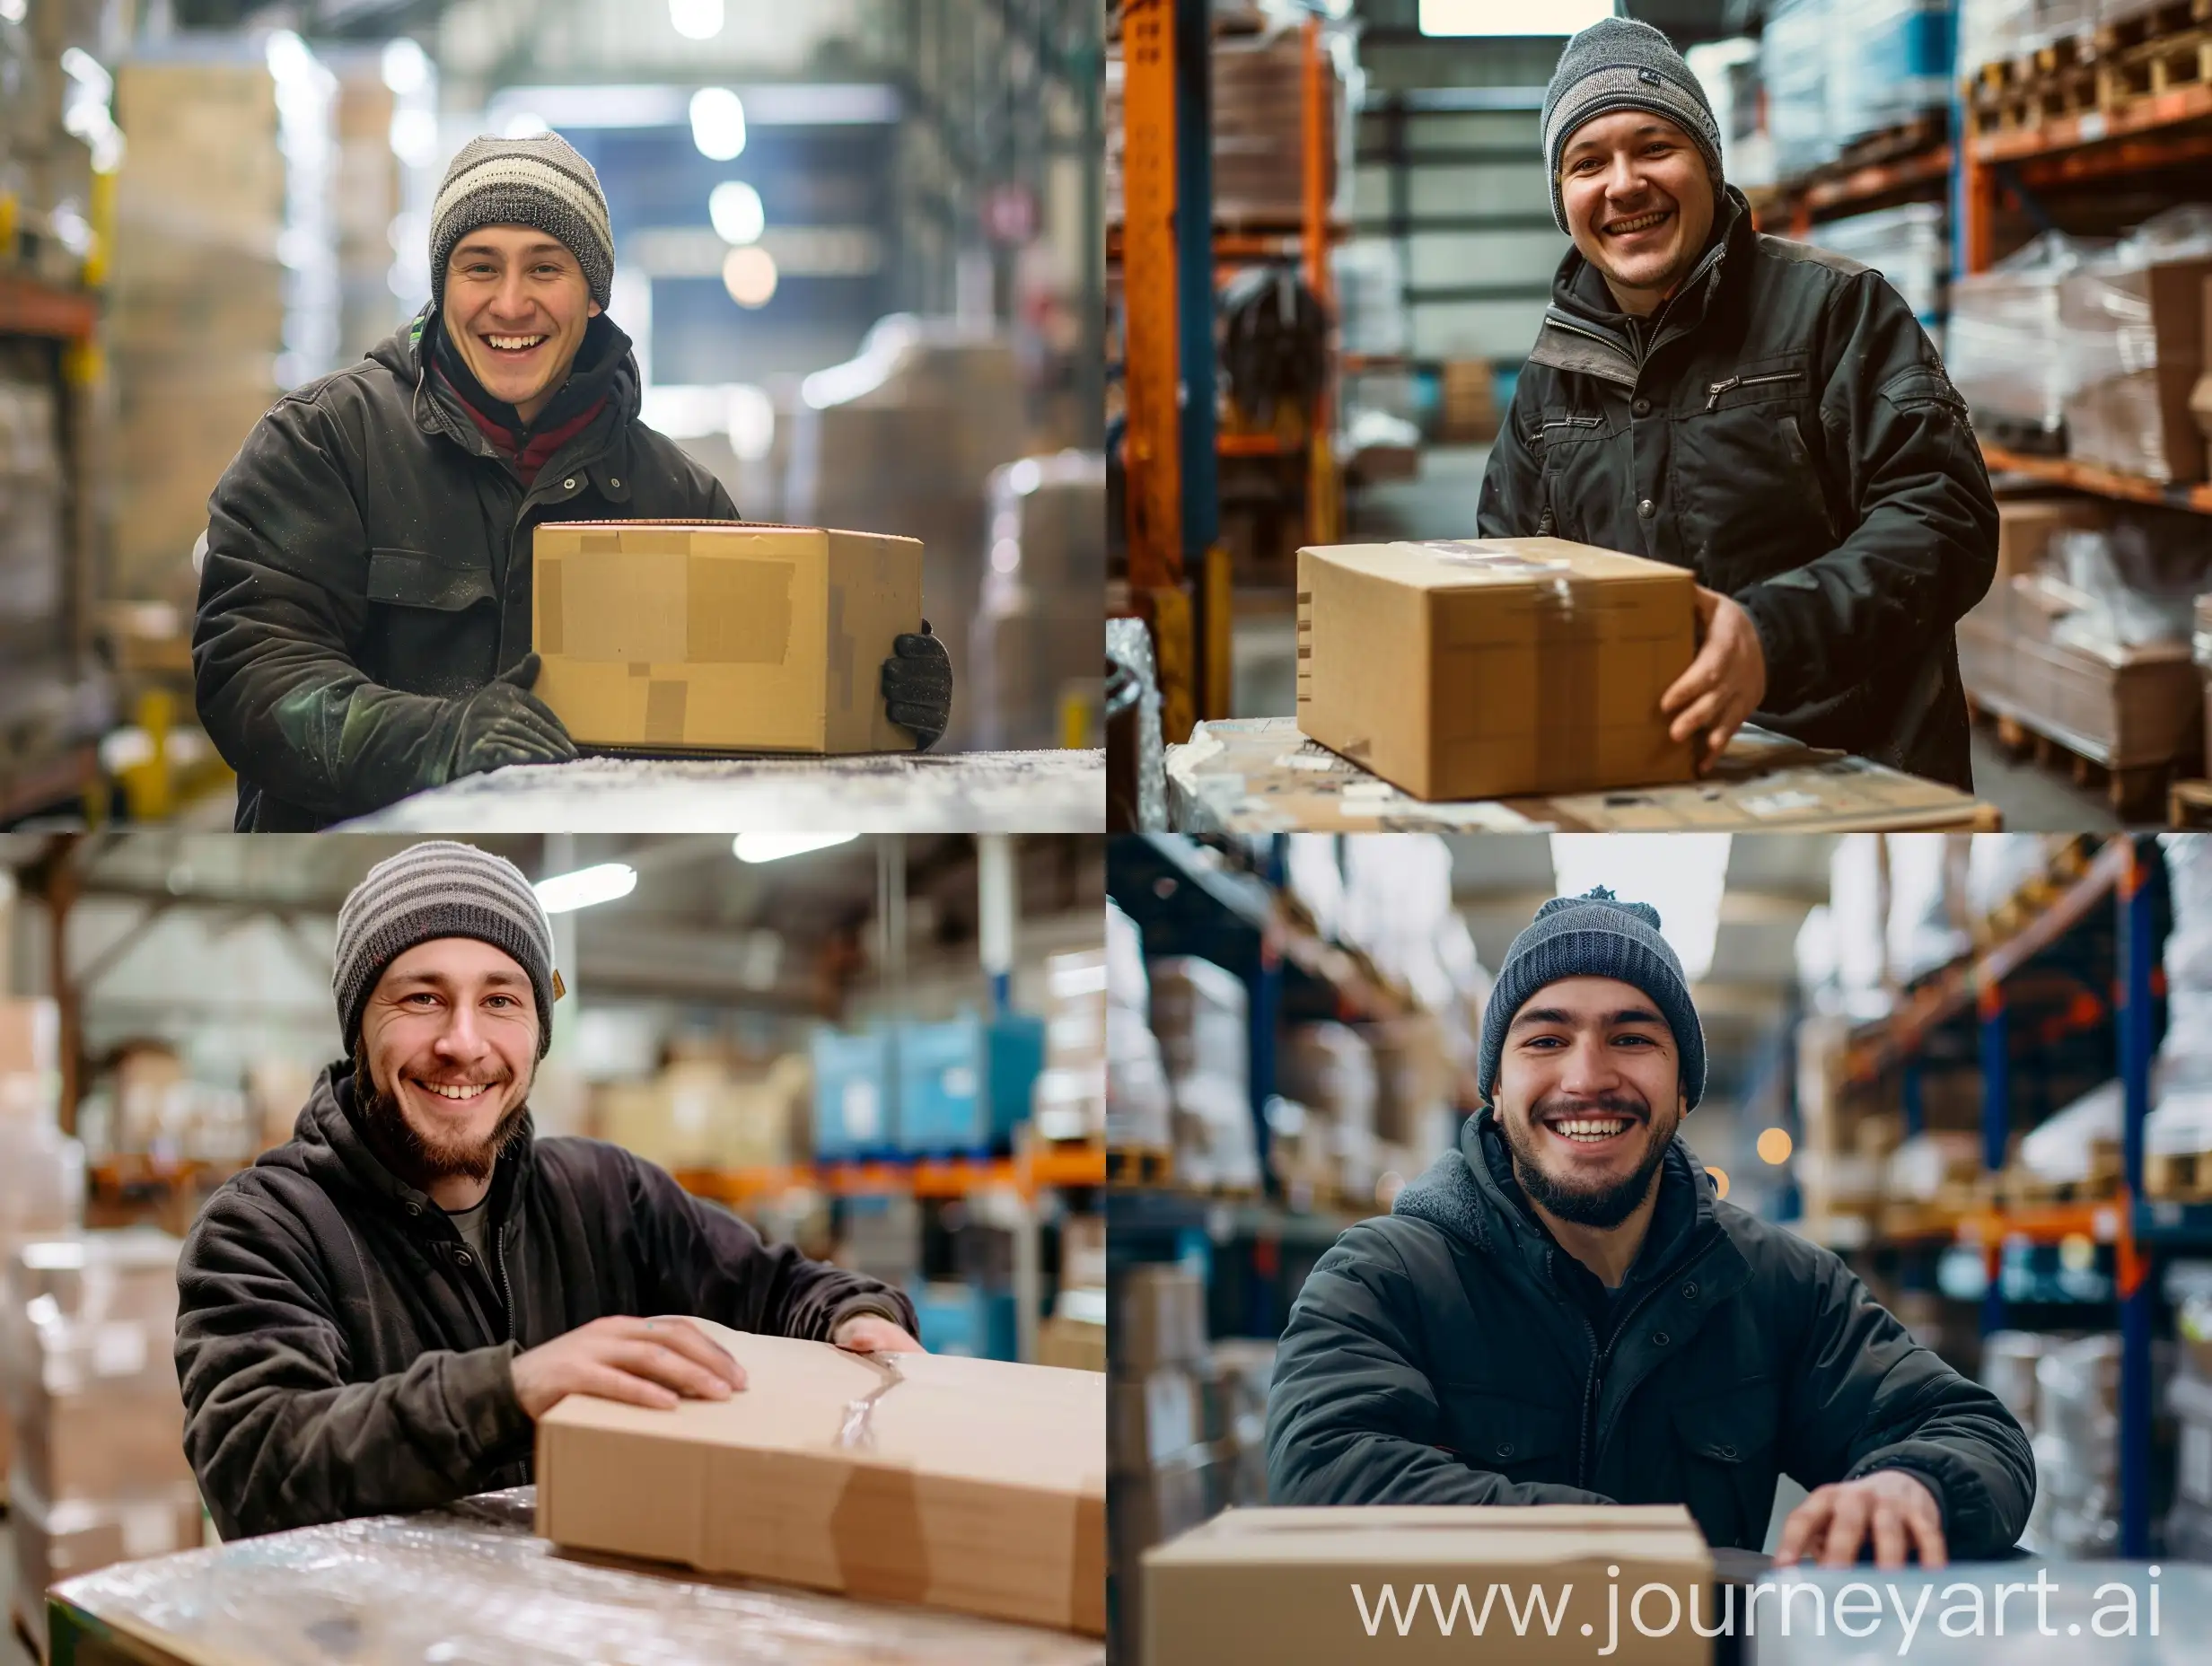 работник склада славянской внешности улыбается на складе и ставит коробку на стол